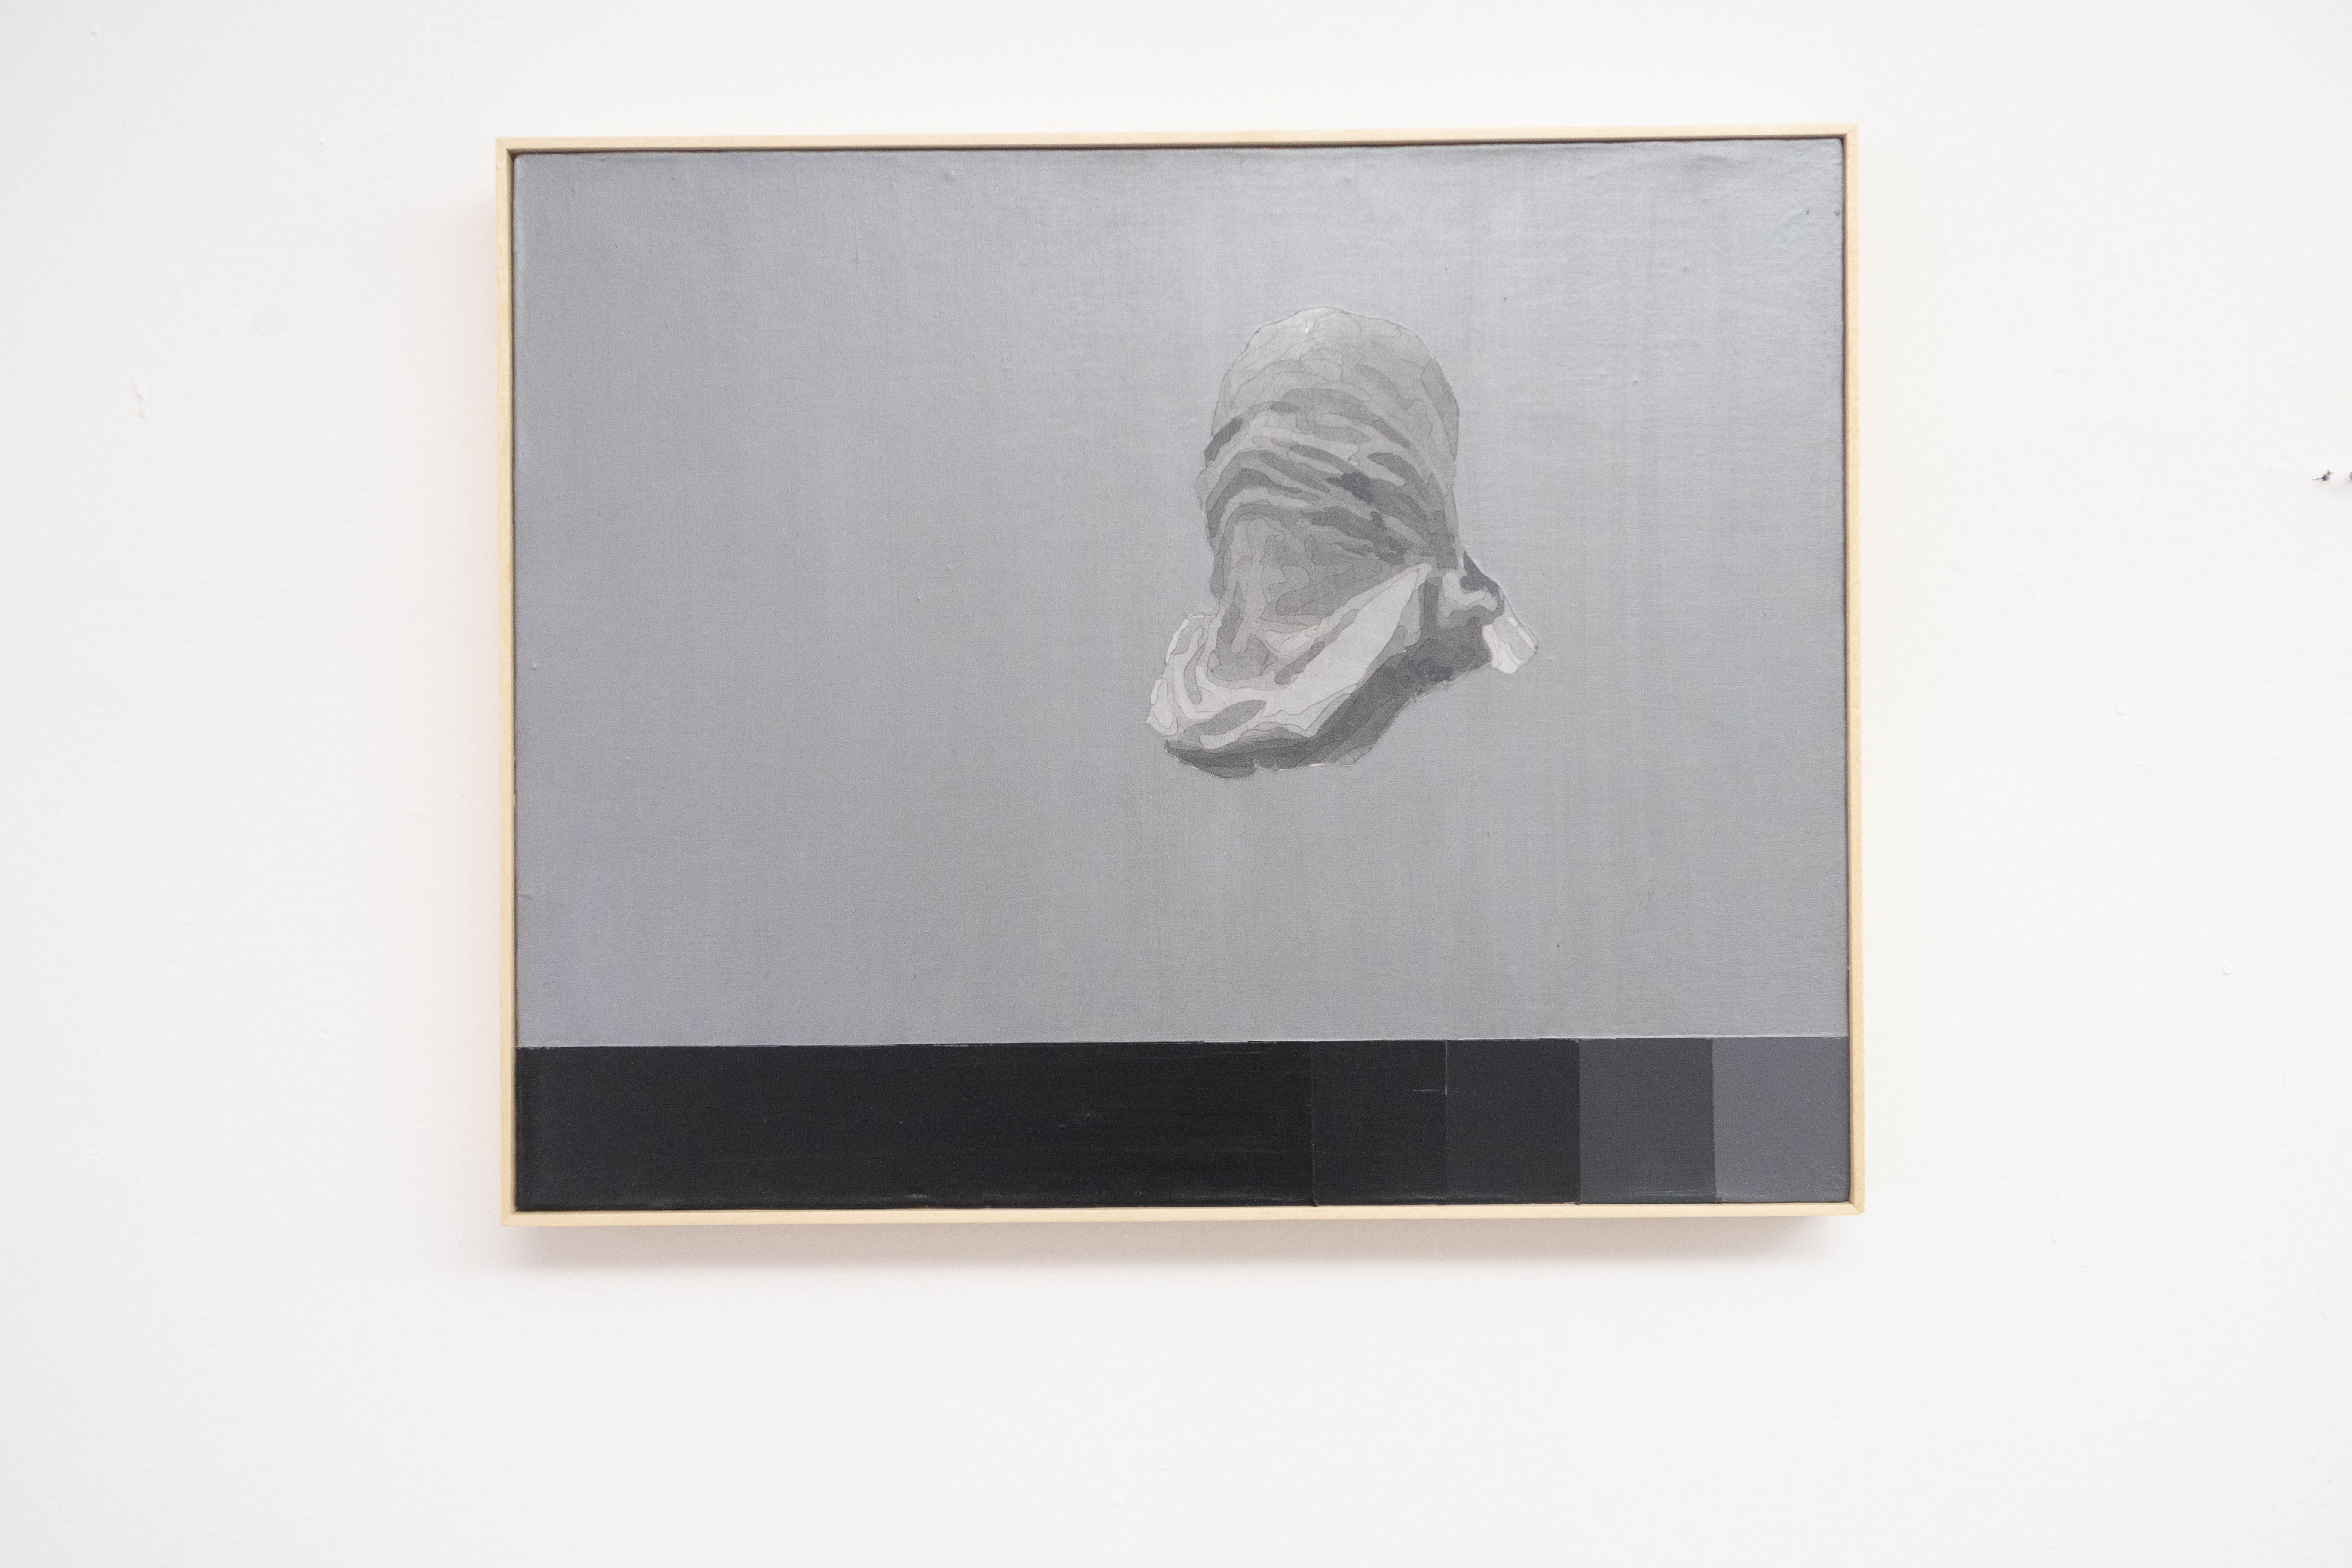 Diego Castro, [A]GRID 0519, Transparência fotográfica, tinta acrílica sobre tela, 40 x 50 cm, 2019